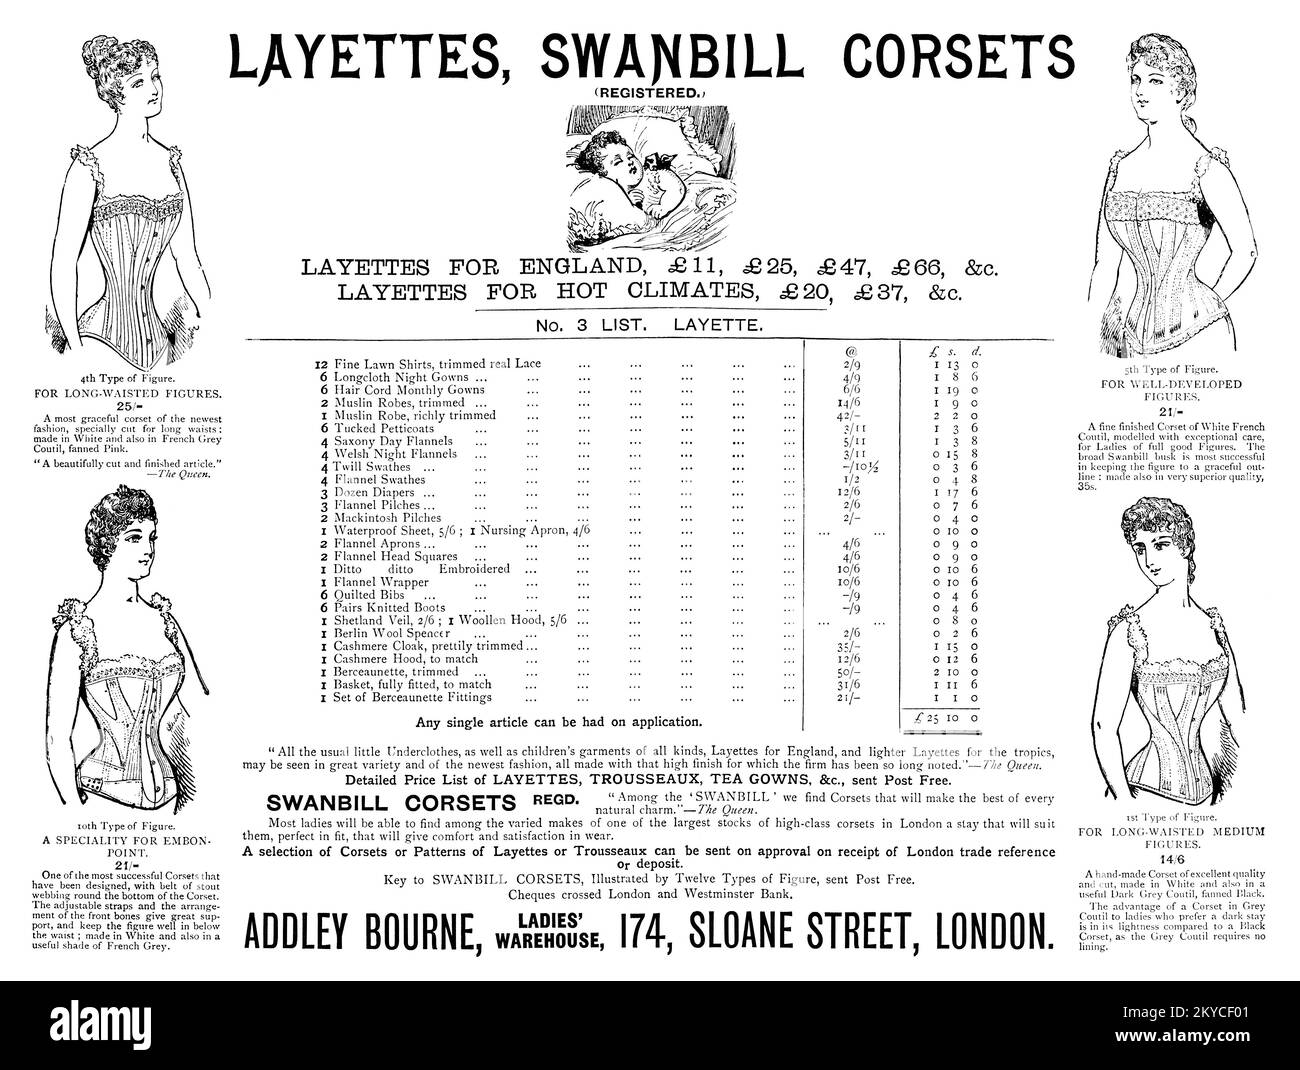 1892 viktorianische britische Werbung für Laietten und Korsetts vom Addley Bourne Ladies' Warehouse in London. Stockfoto